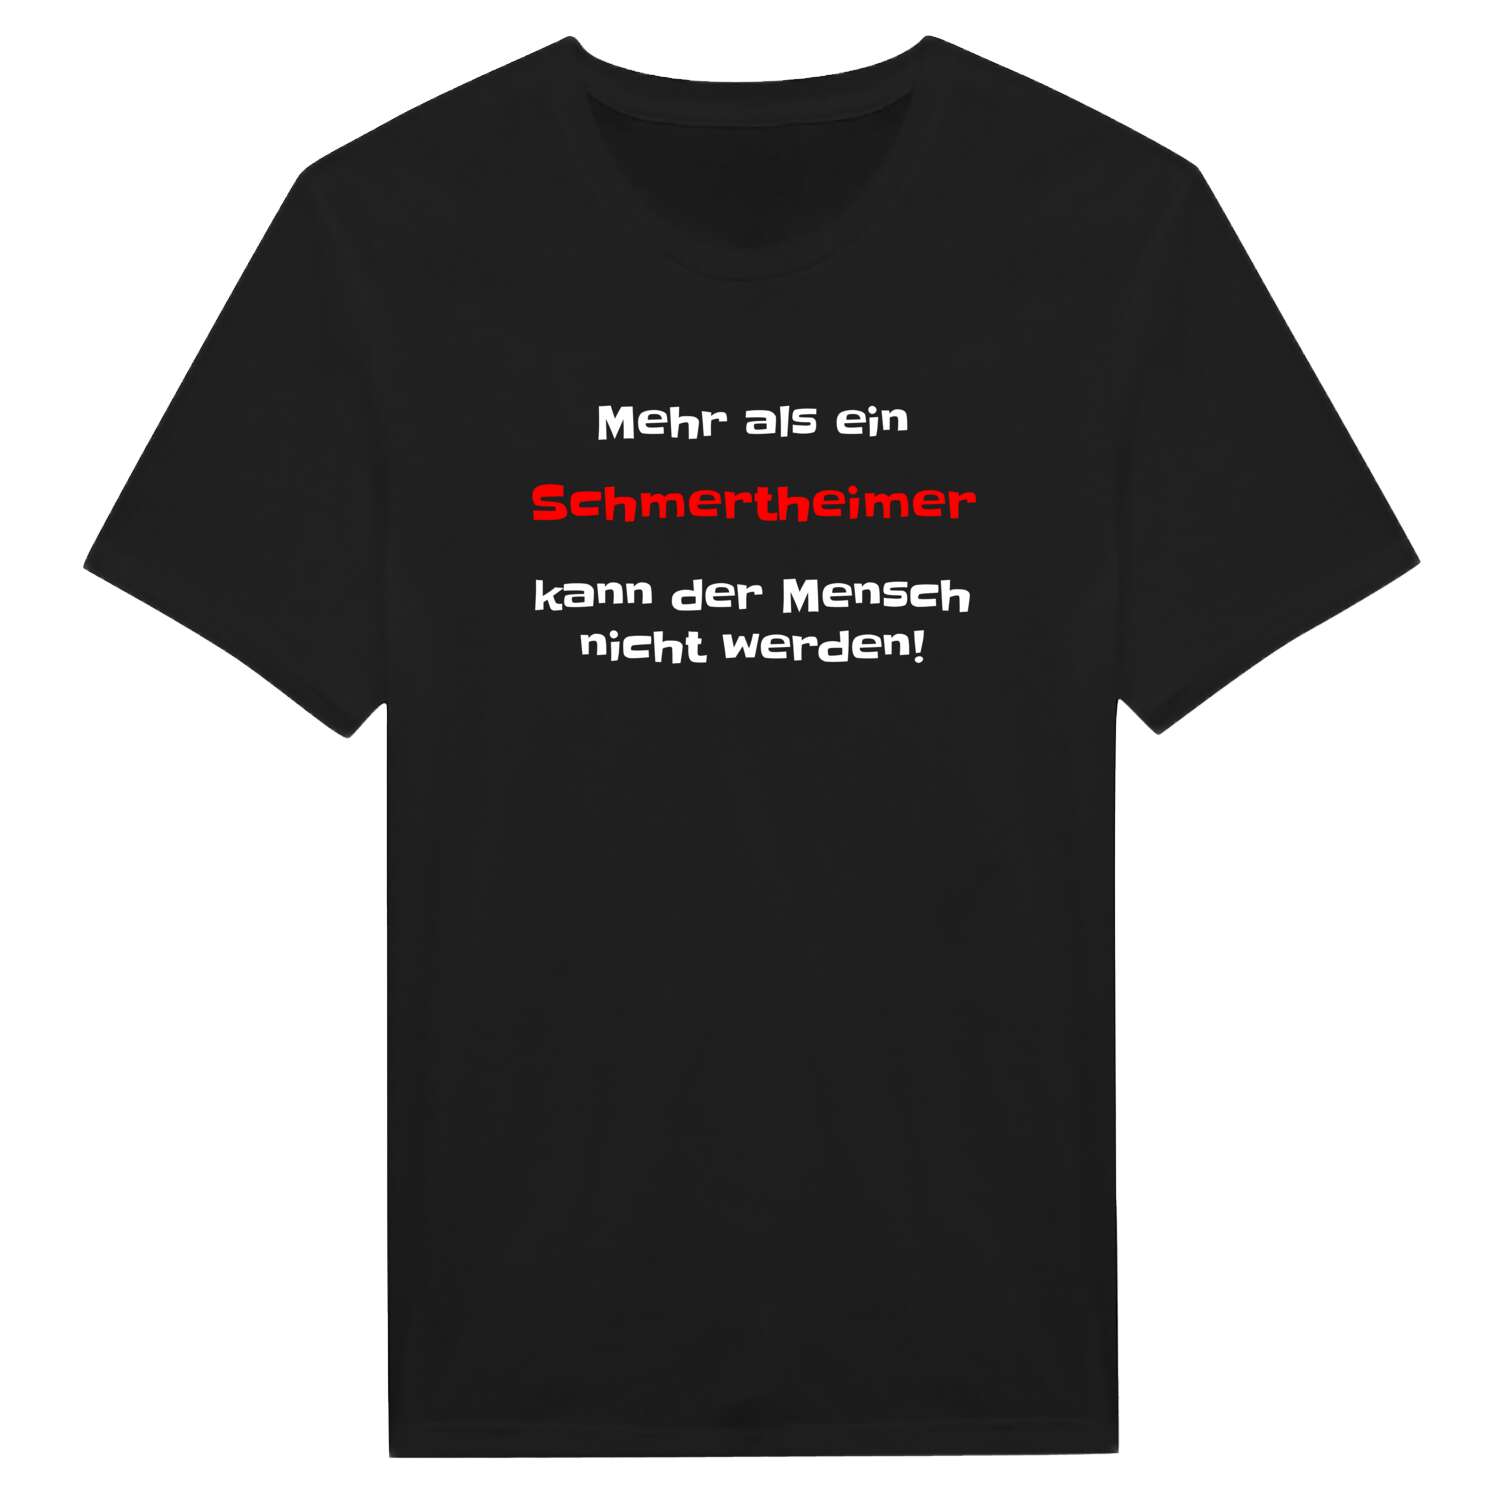 Schmertheim T-Shirt »Mehr als ein«